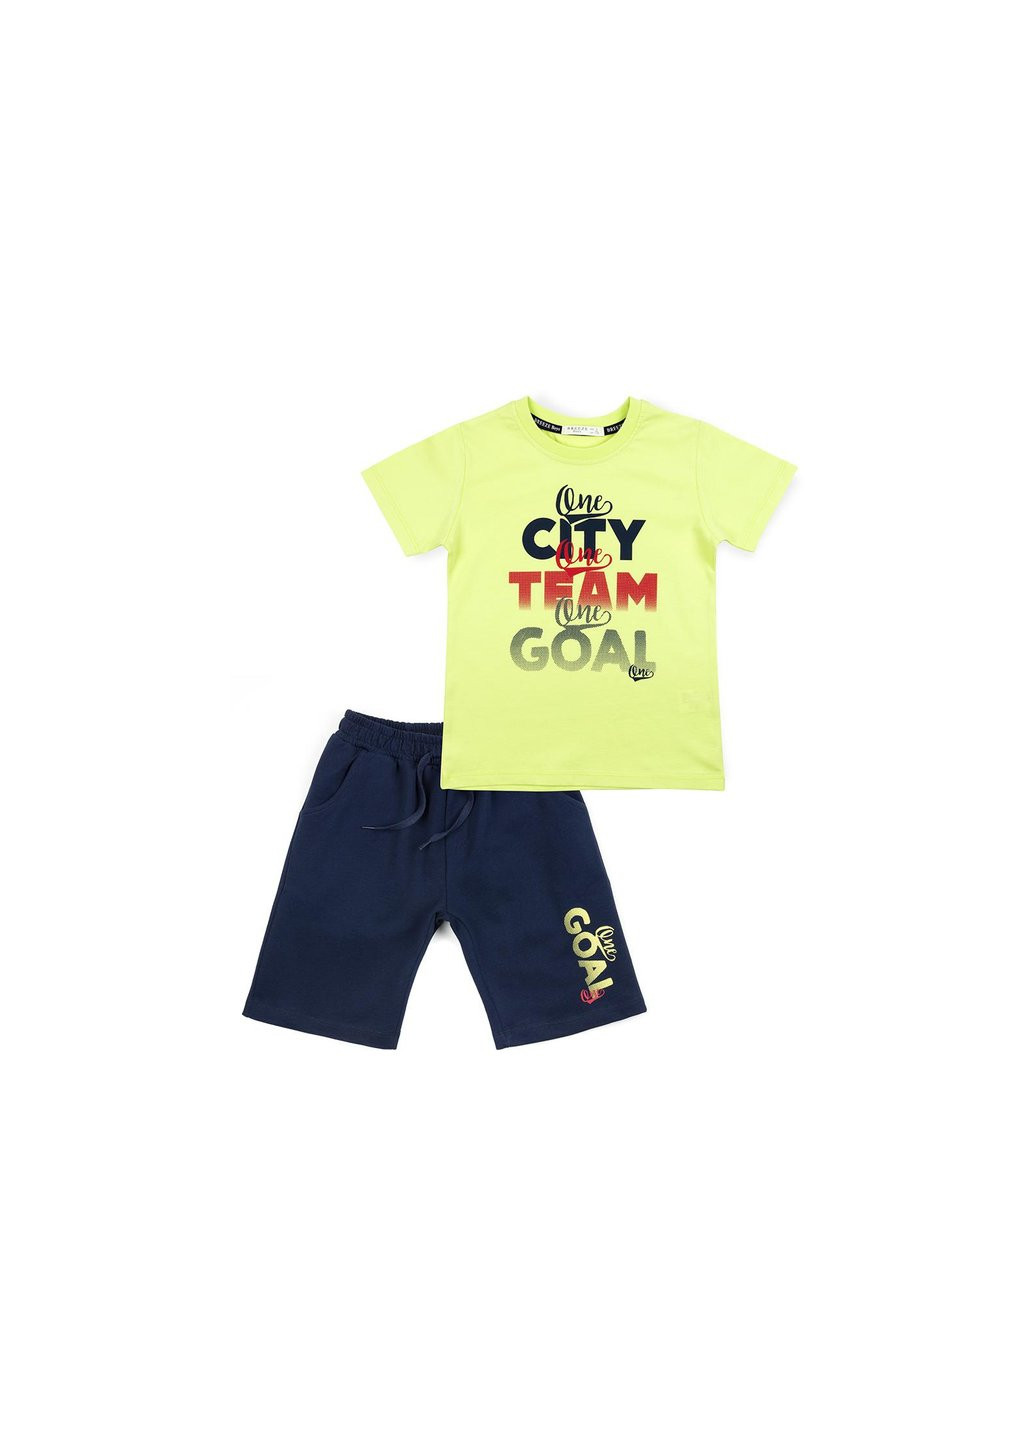 Зелений літній набір дитячого одягу city team goal (12407-116b-green) Breeze